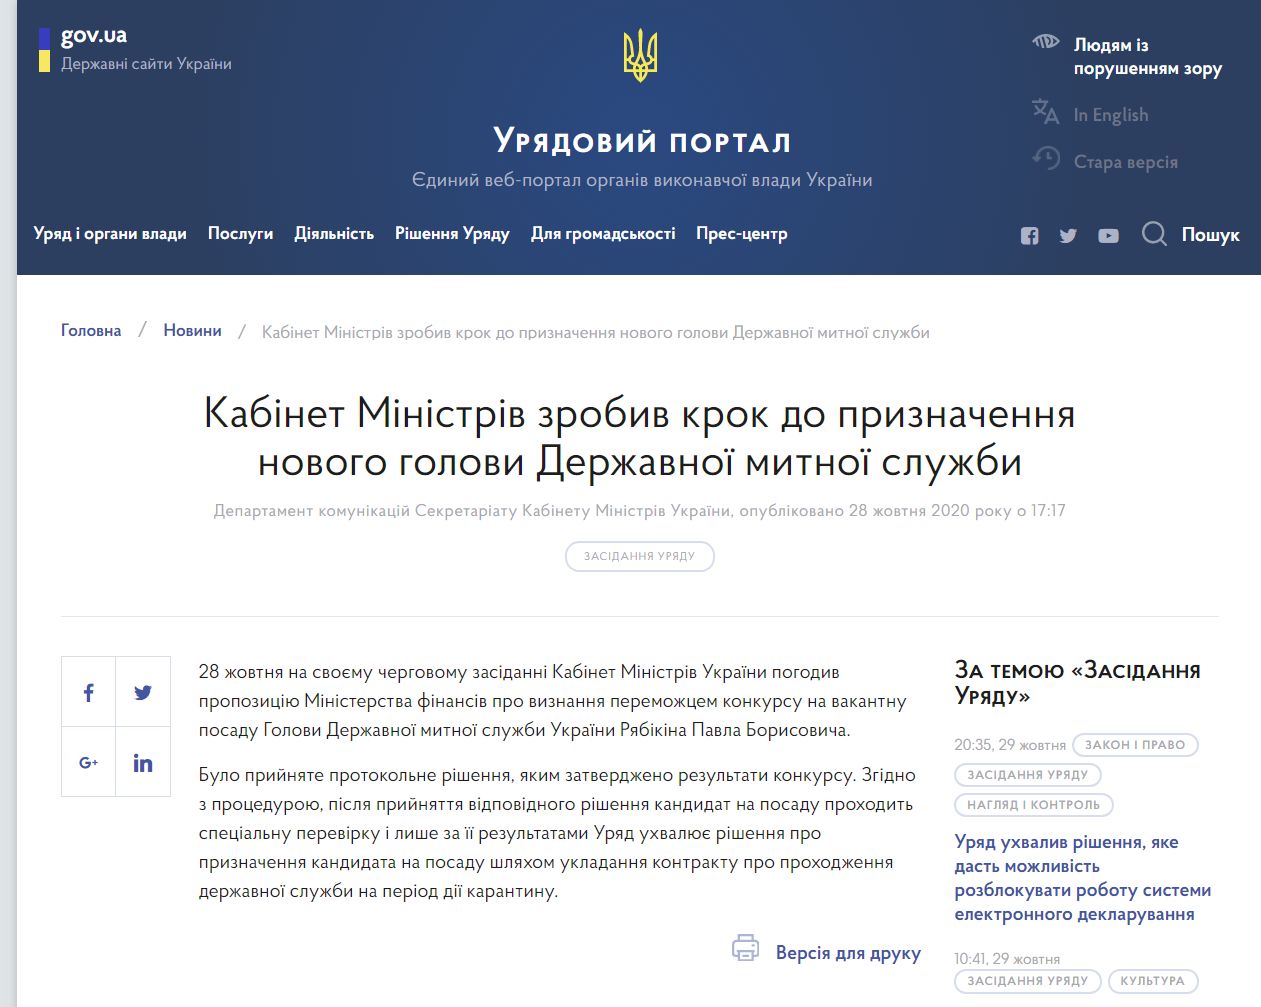 https://www.kmu.gov.ua/news/kabinet-ministriv-zrobiv-krok-do-priznachennya-novogo-golovi-derzhavnoyi-mitnoyi-sluzhbi